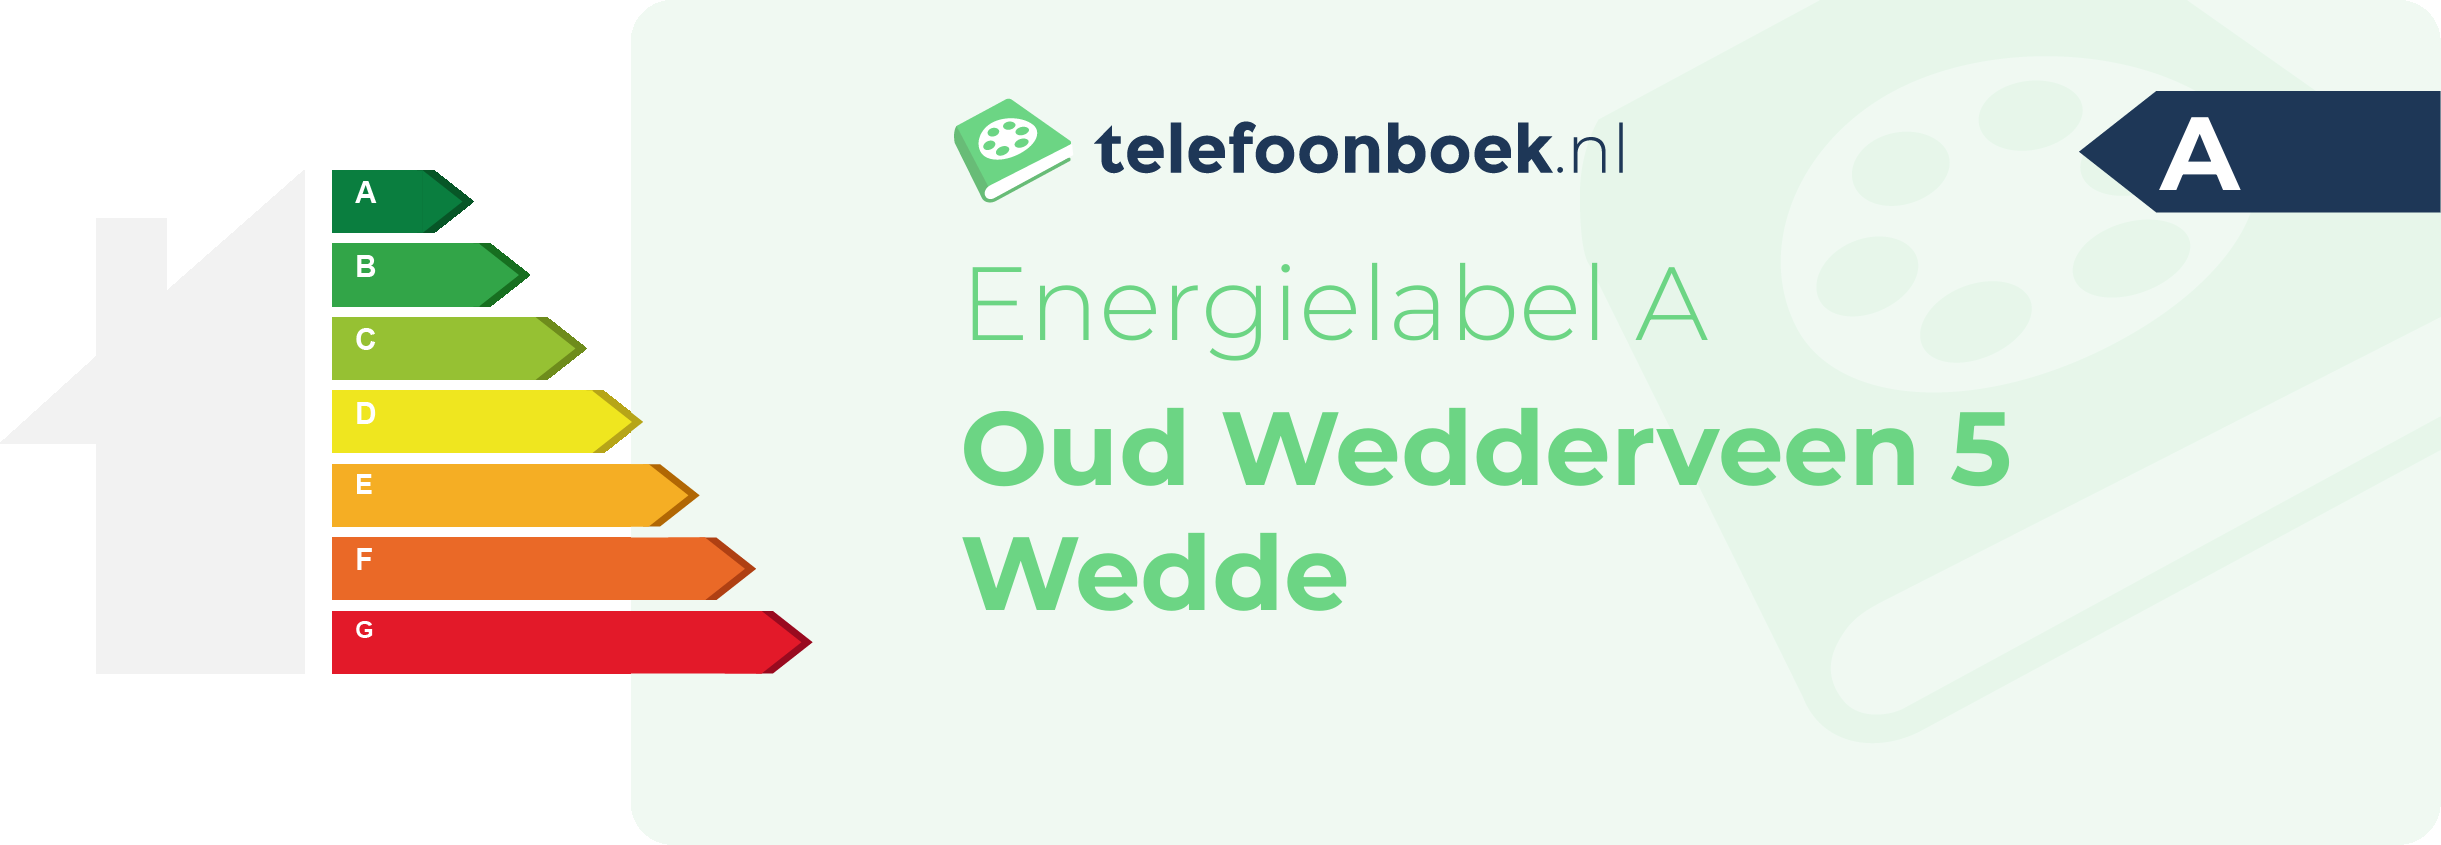 Energielabel Oud Wedderveen 5 Wedde